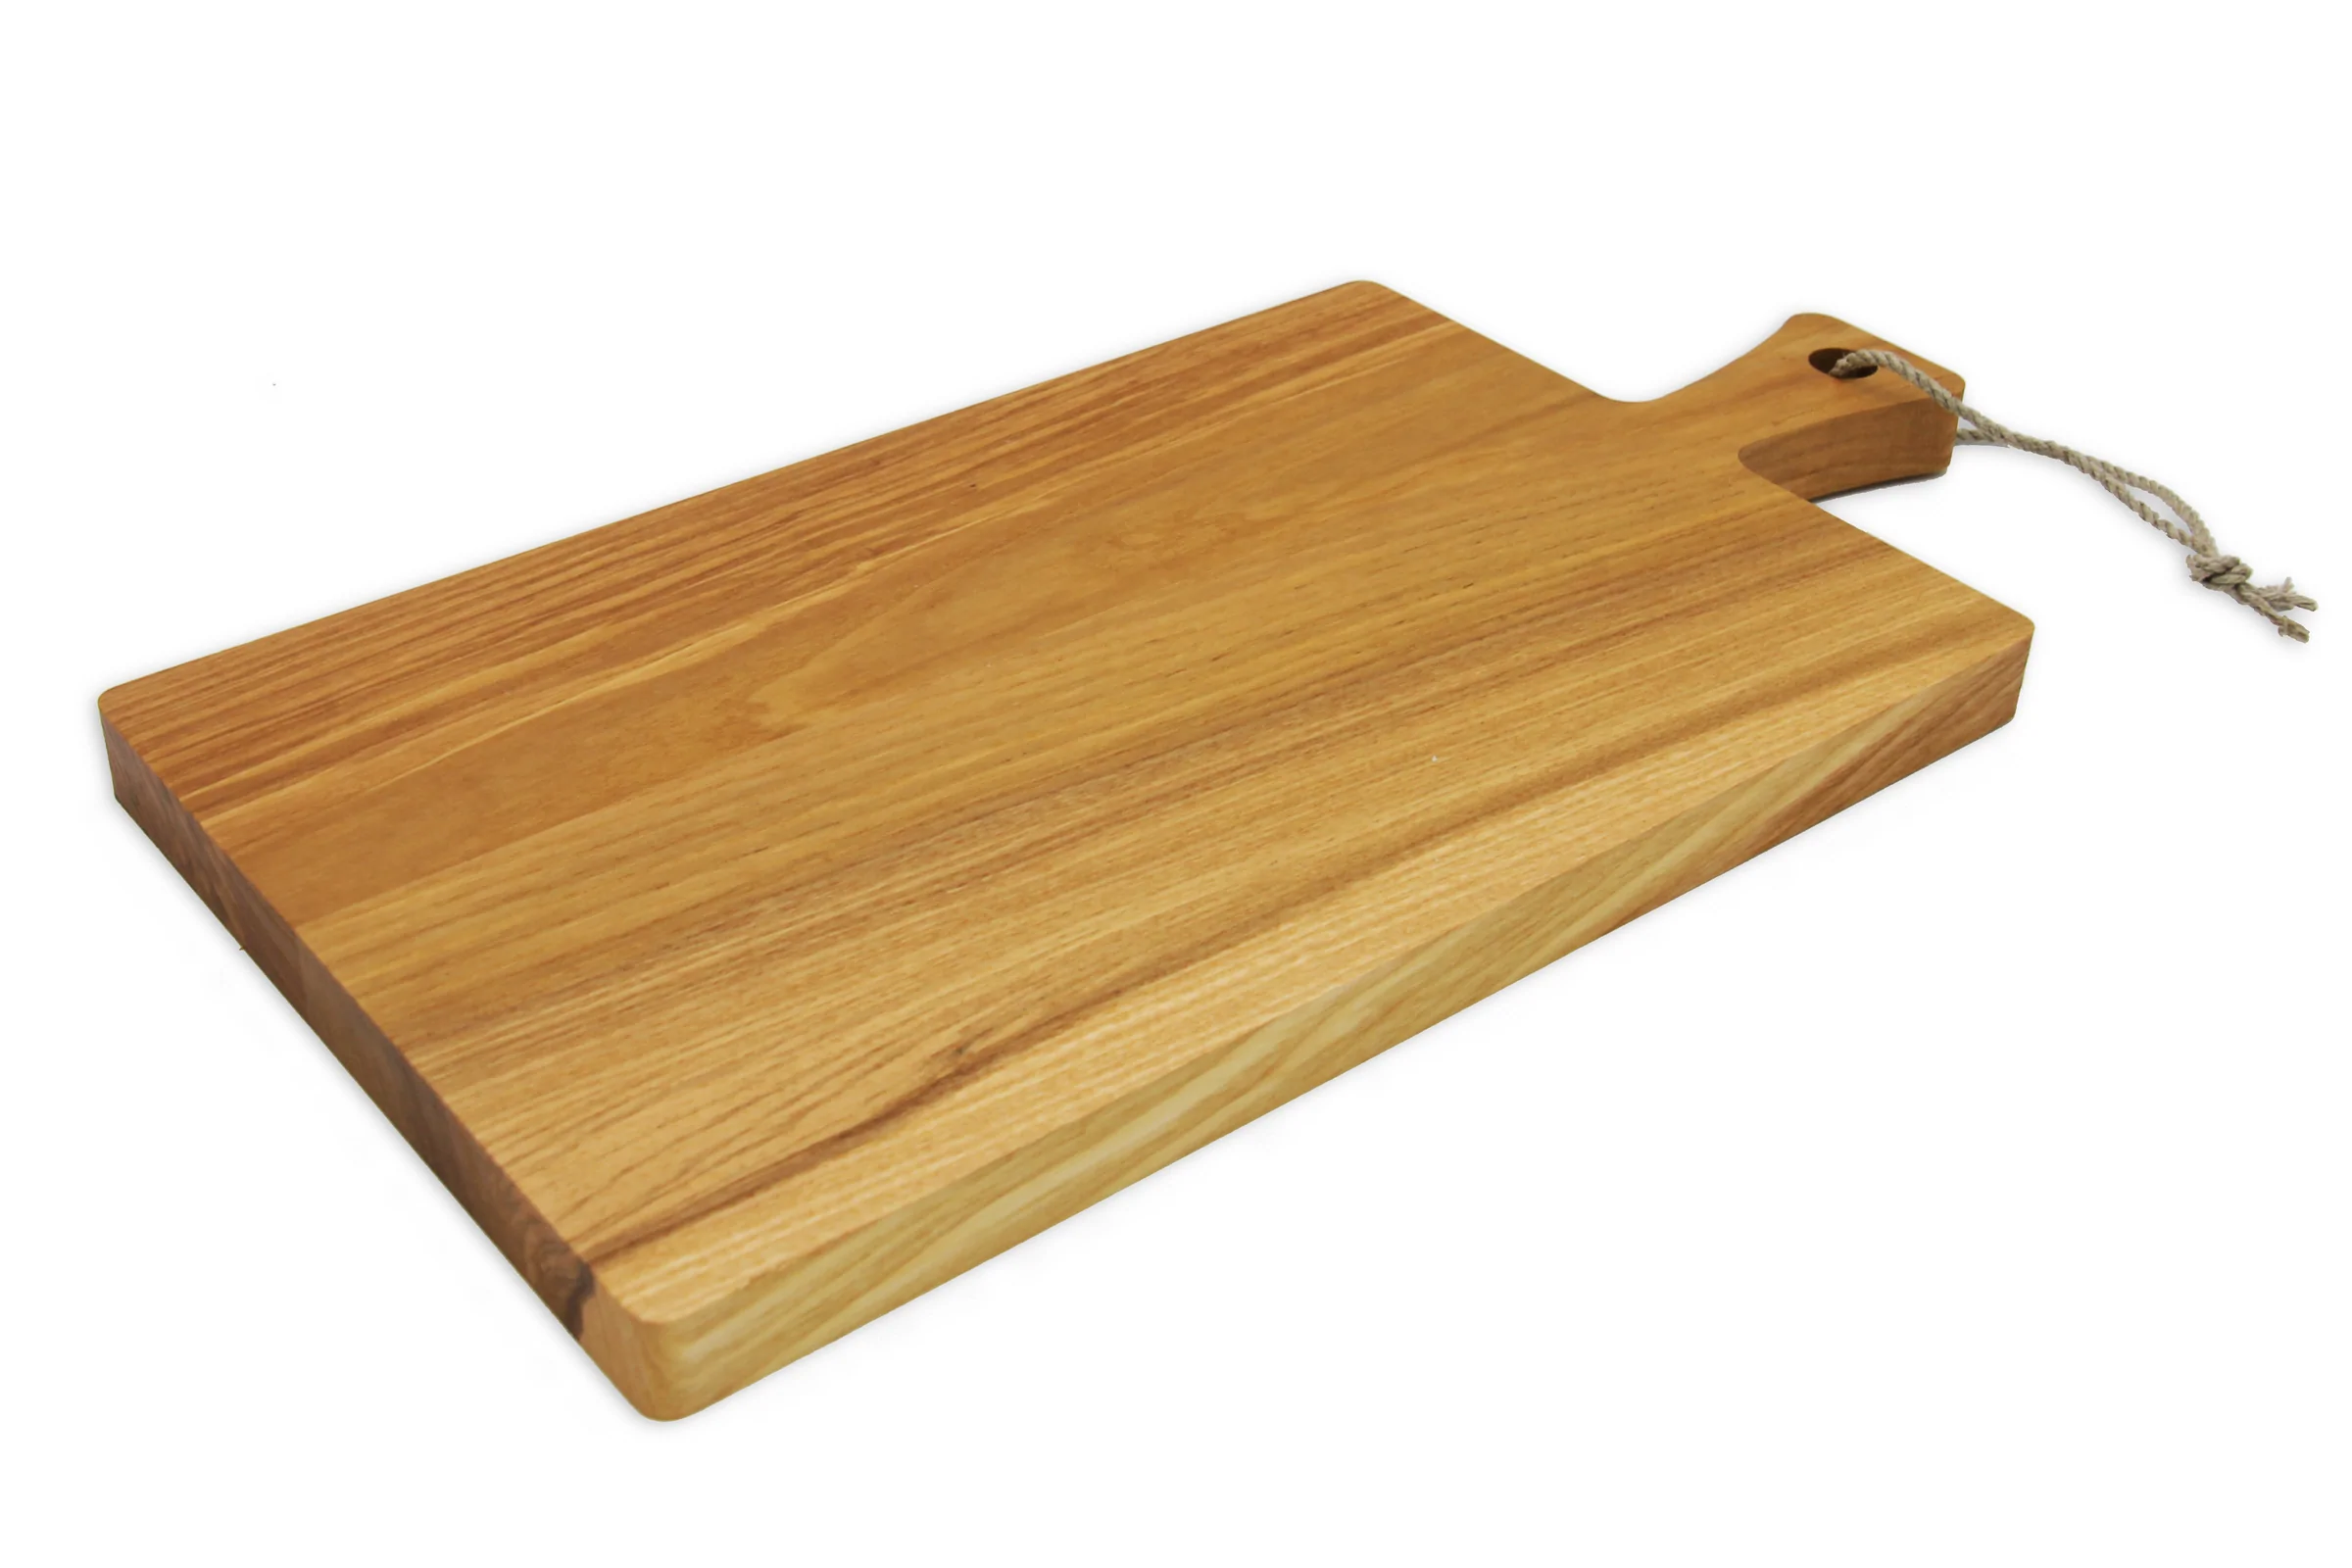 Planche à découper personnalisée en bois de frêne (40 x 20 cm) - Fauske - Zaprinta France